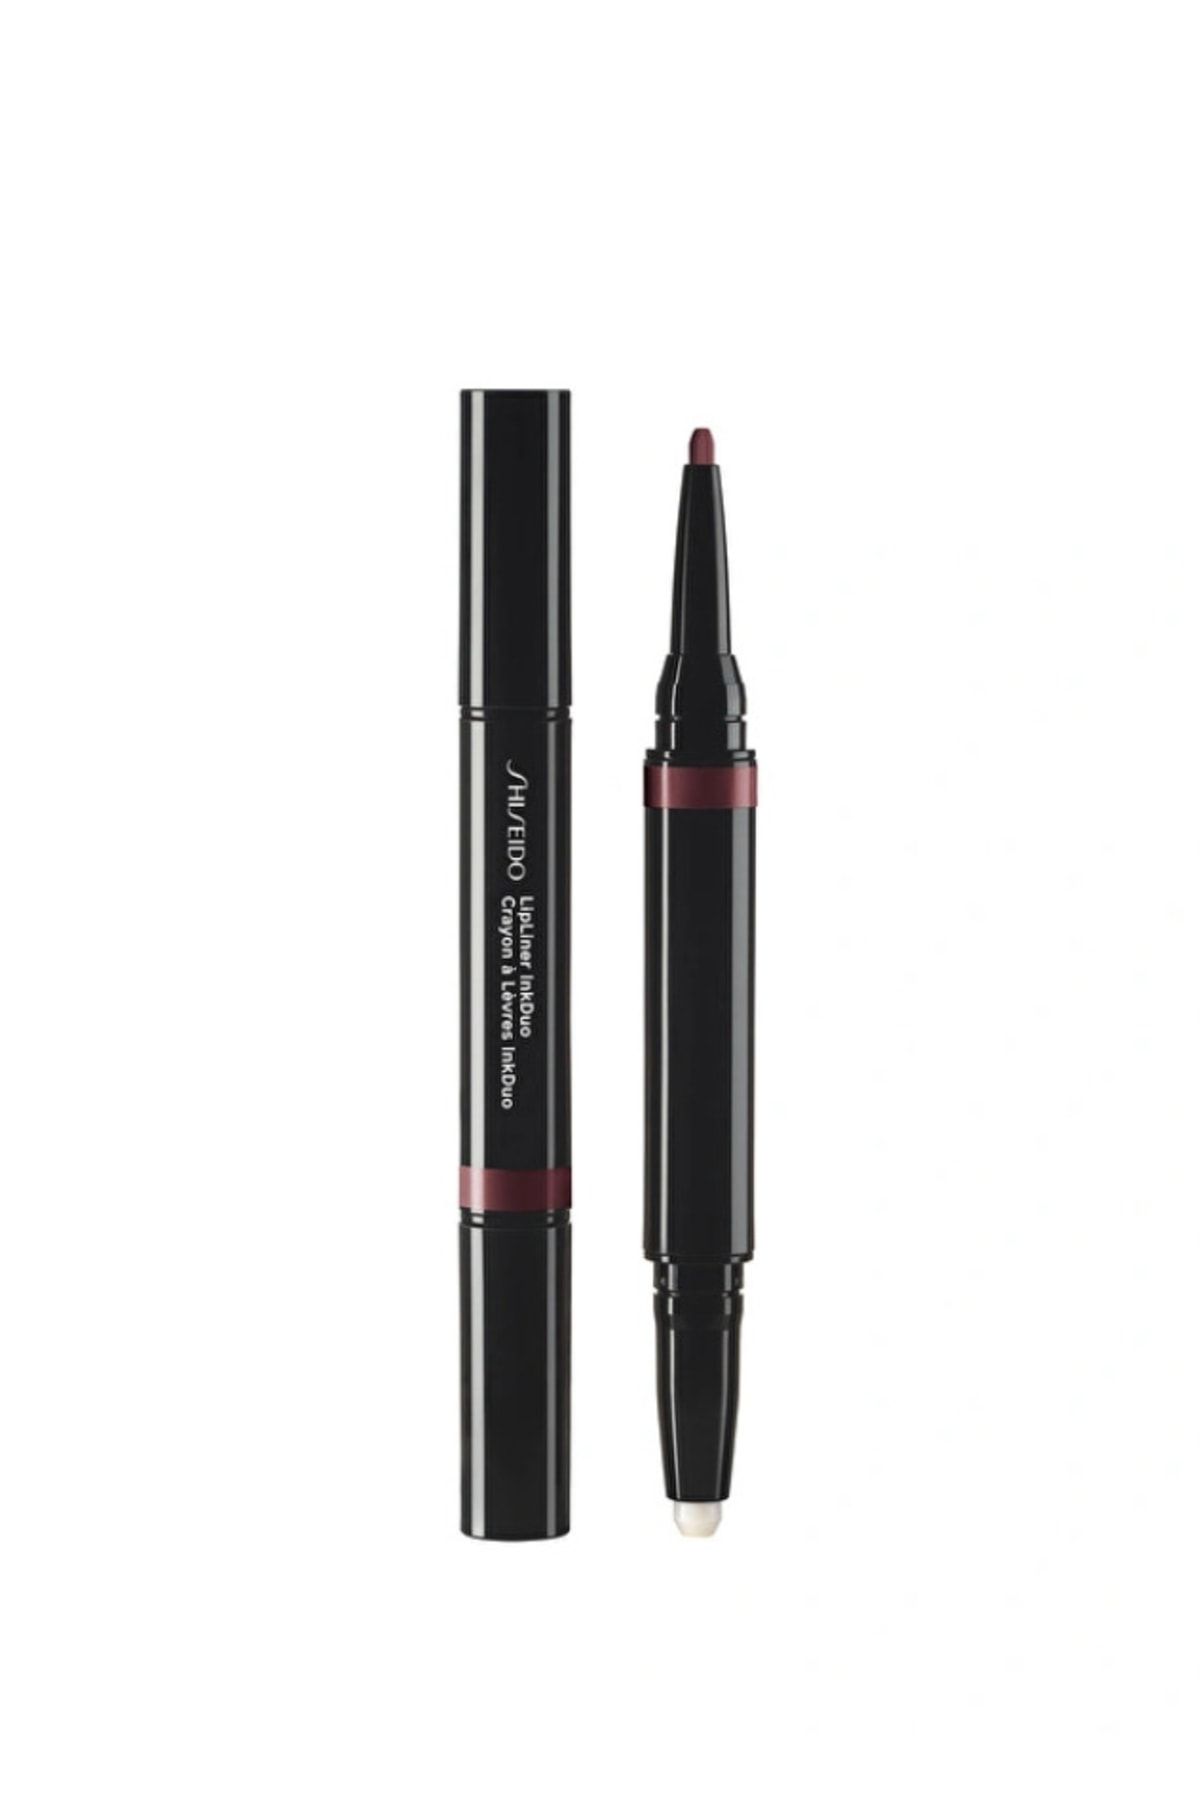 Shiseido Lıplıner Inkduo -2’si 1 Arada Dudak Kalemi 1.1 Gr